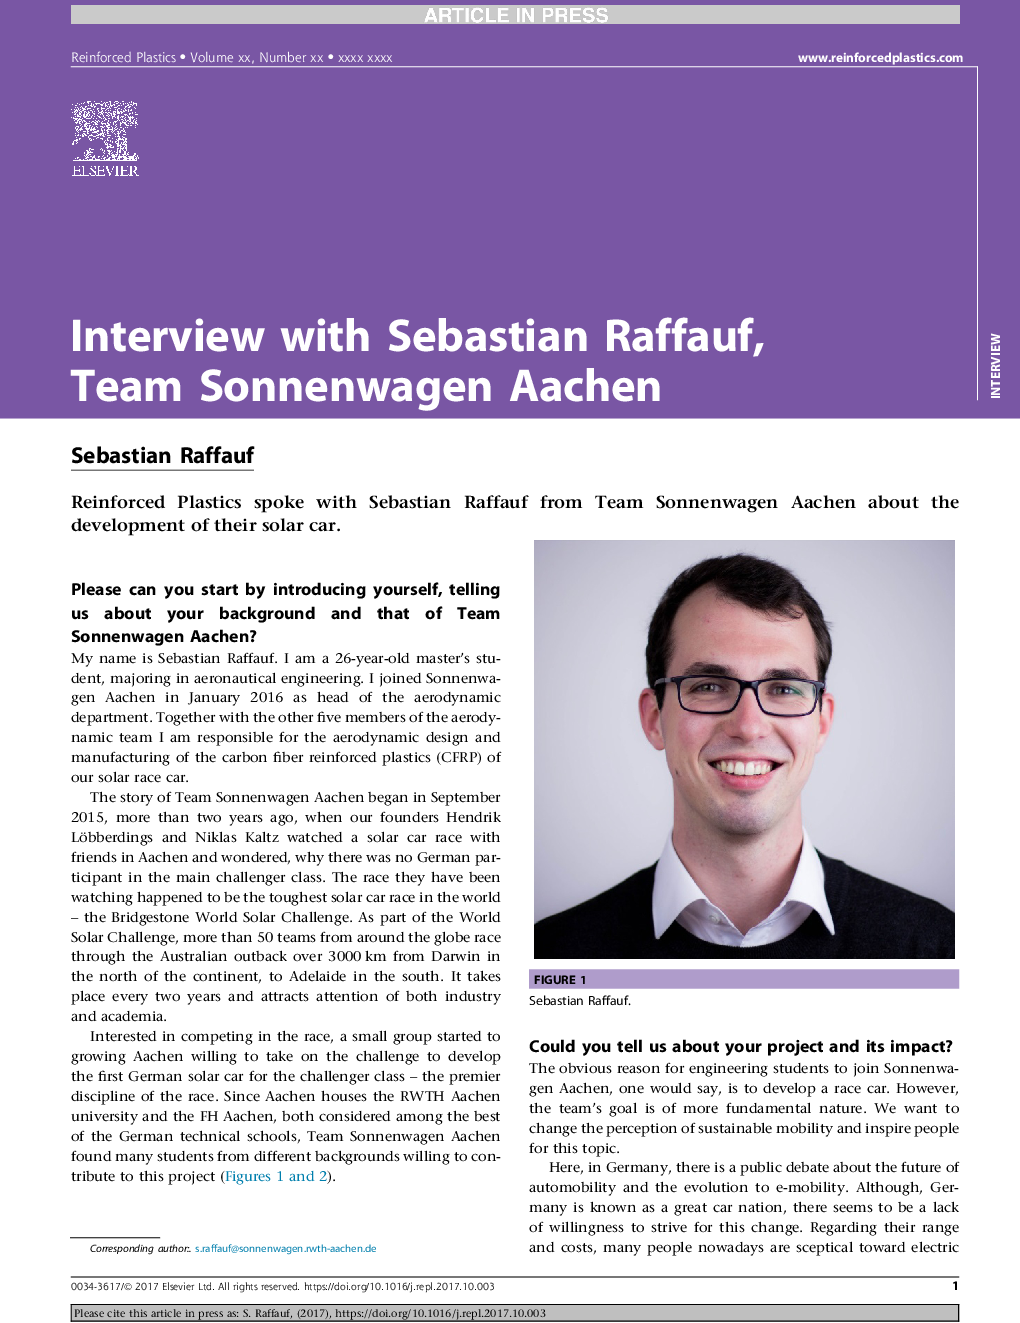 Interview with Sebastian Raffauf, Team Sonnenwagen Aachen